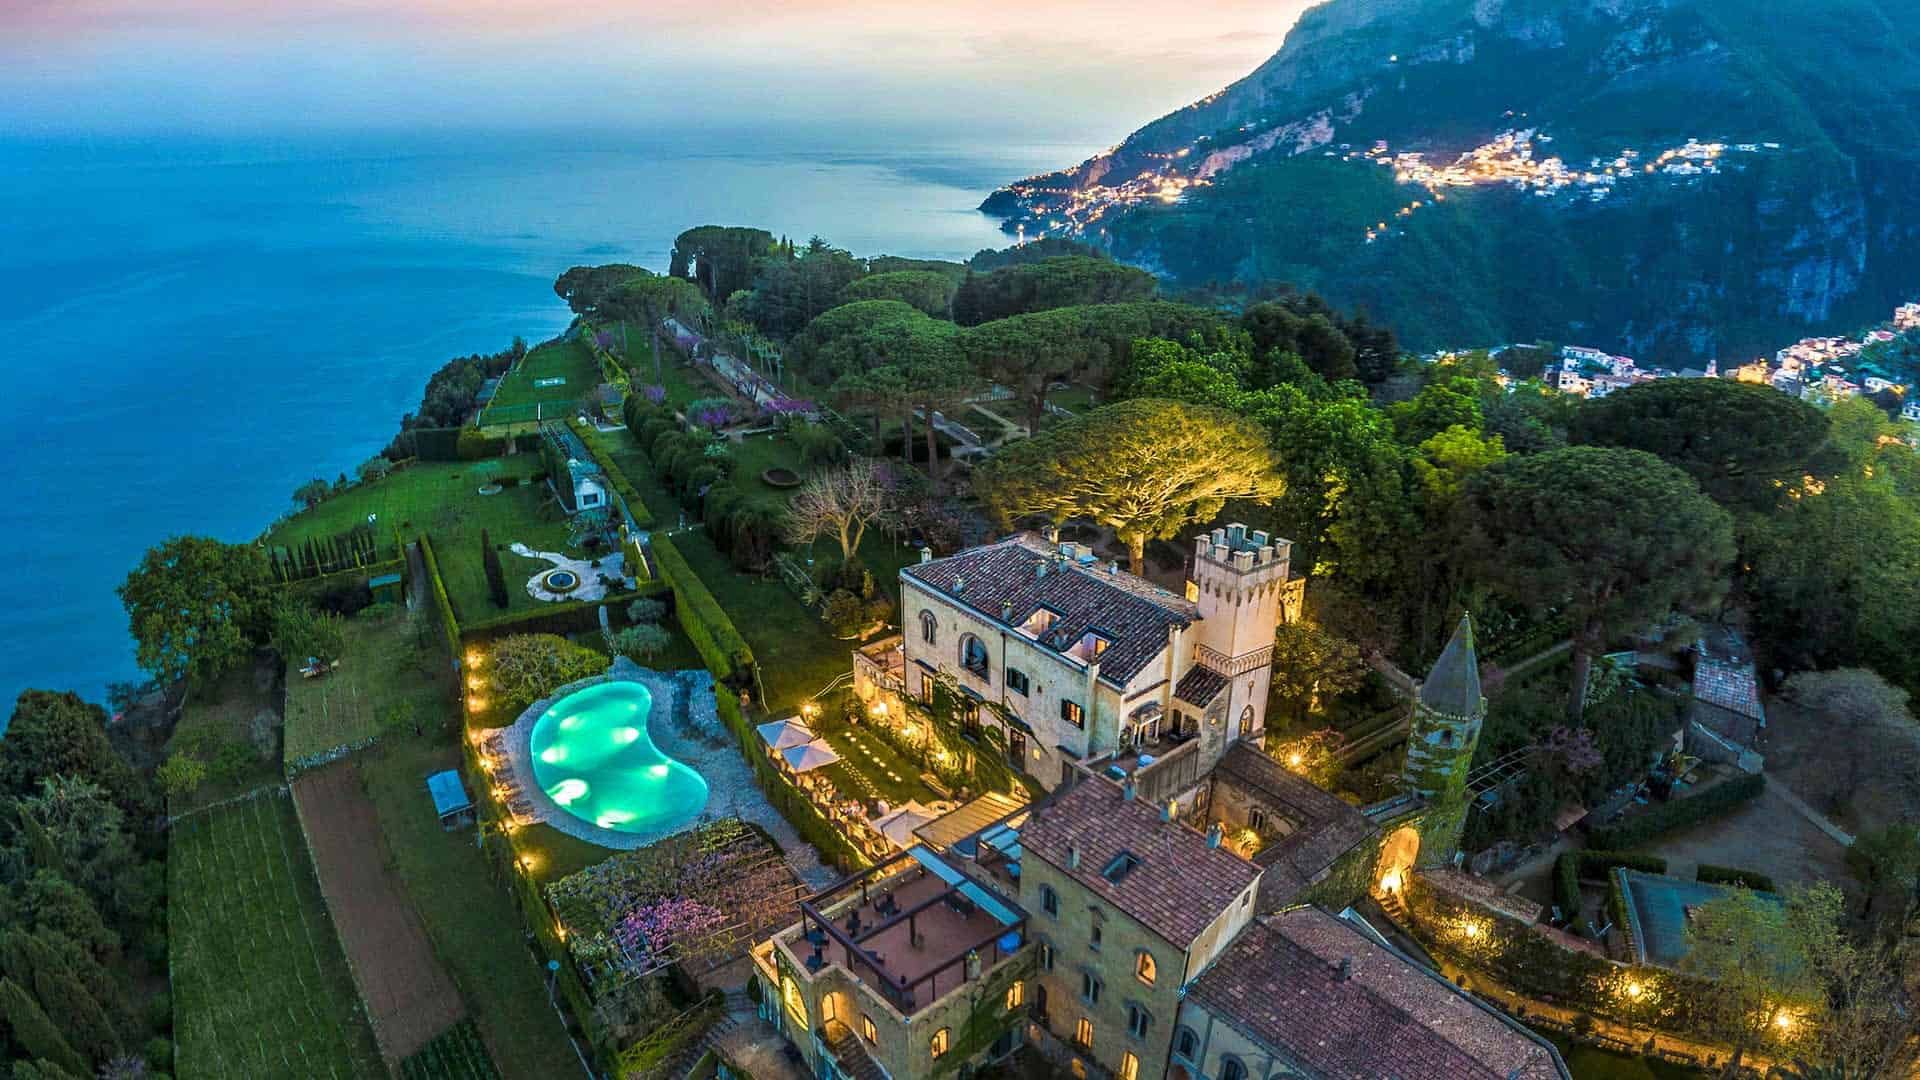 Hotel Villa Cimbrone